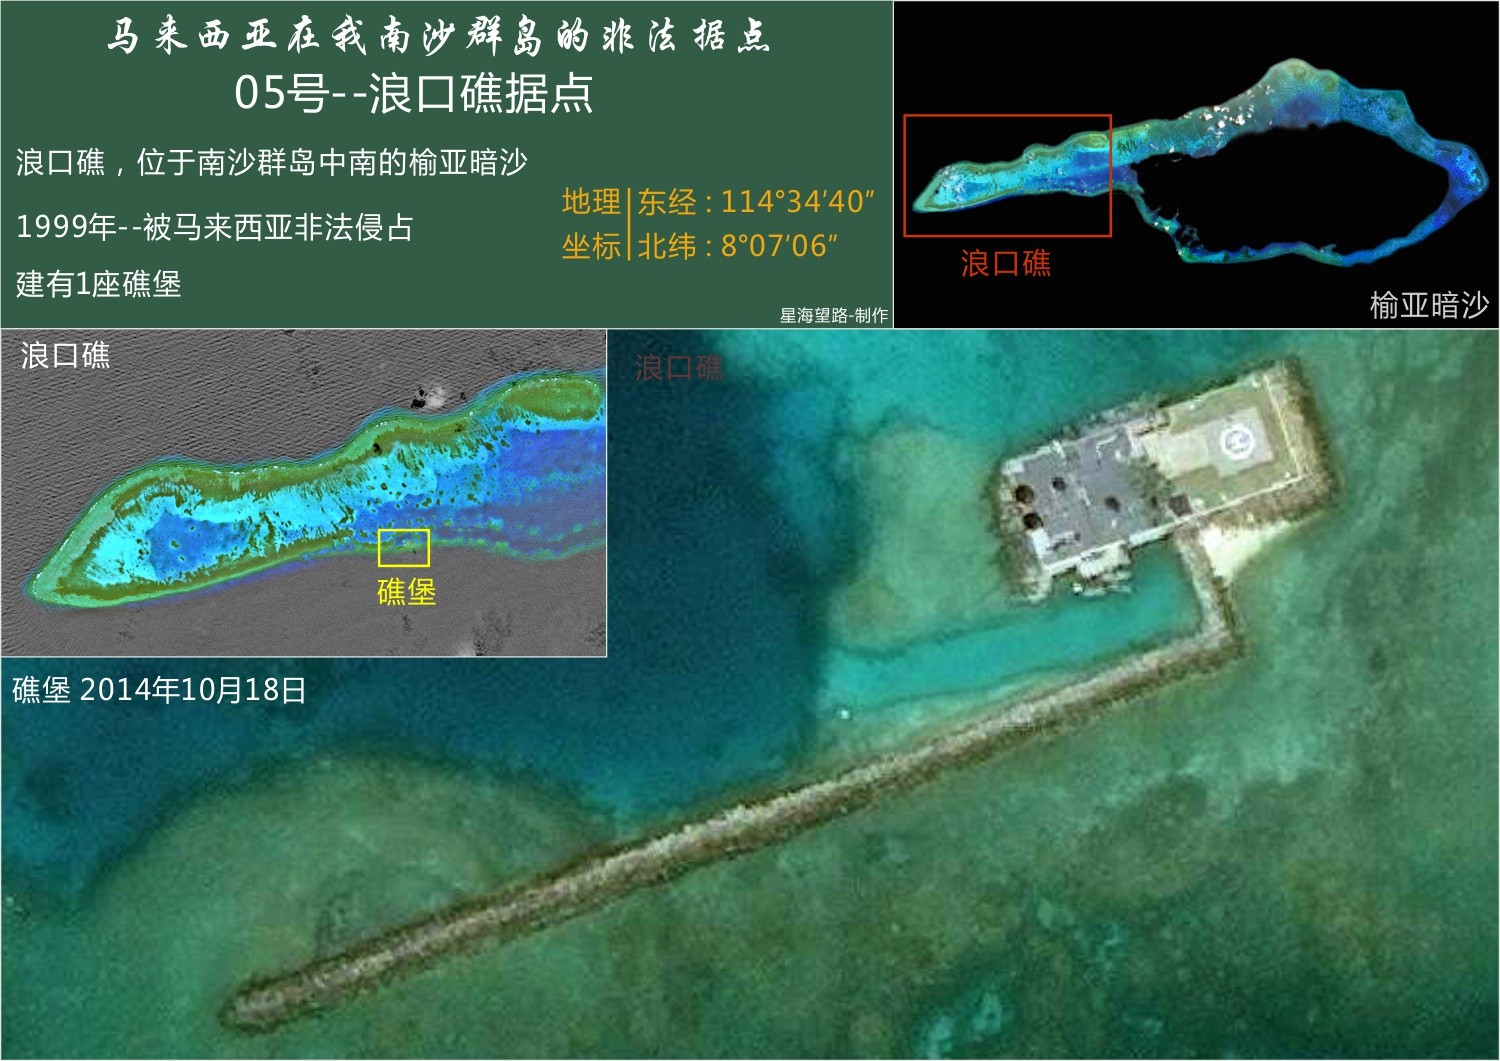 中国南沙占领各个岛礁的最新情况战屡意义南海岛礁占领示意图南海石油分布图